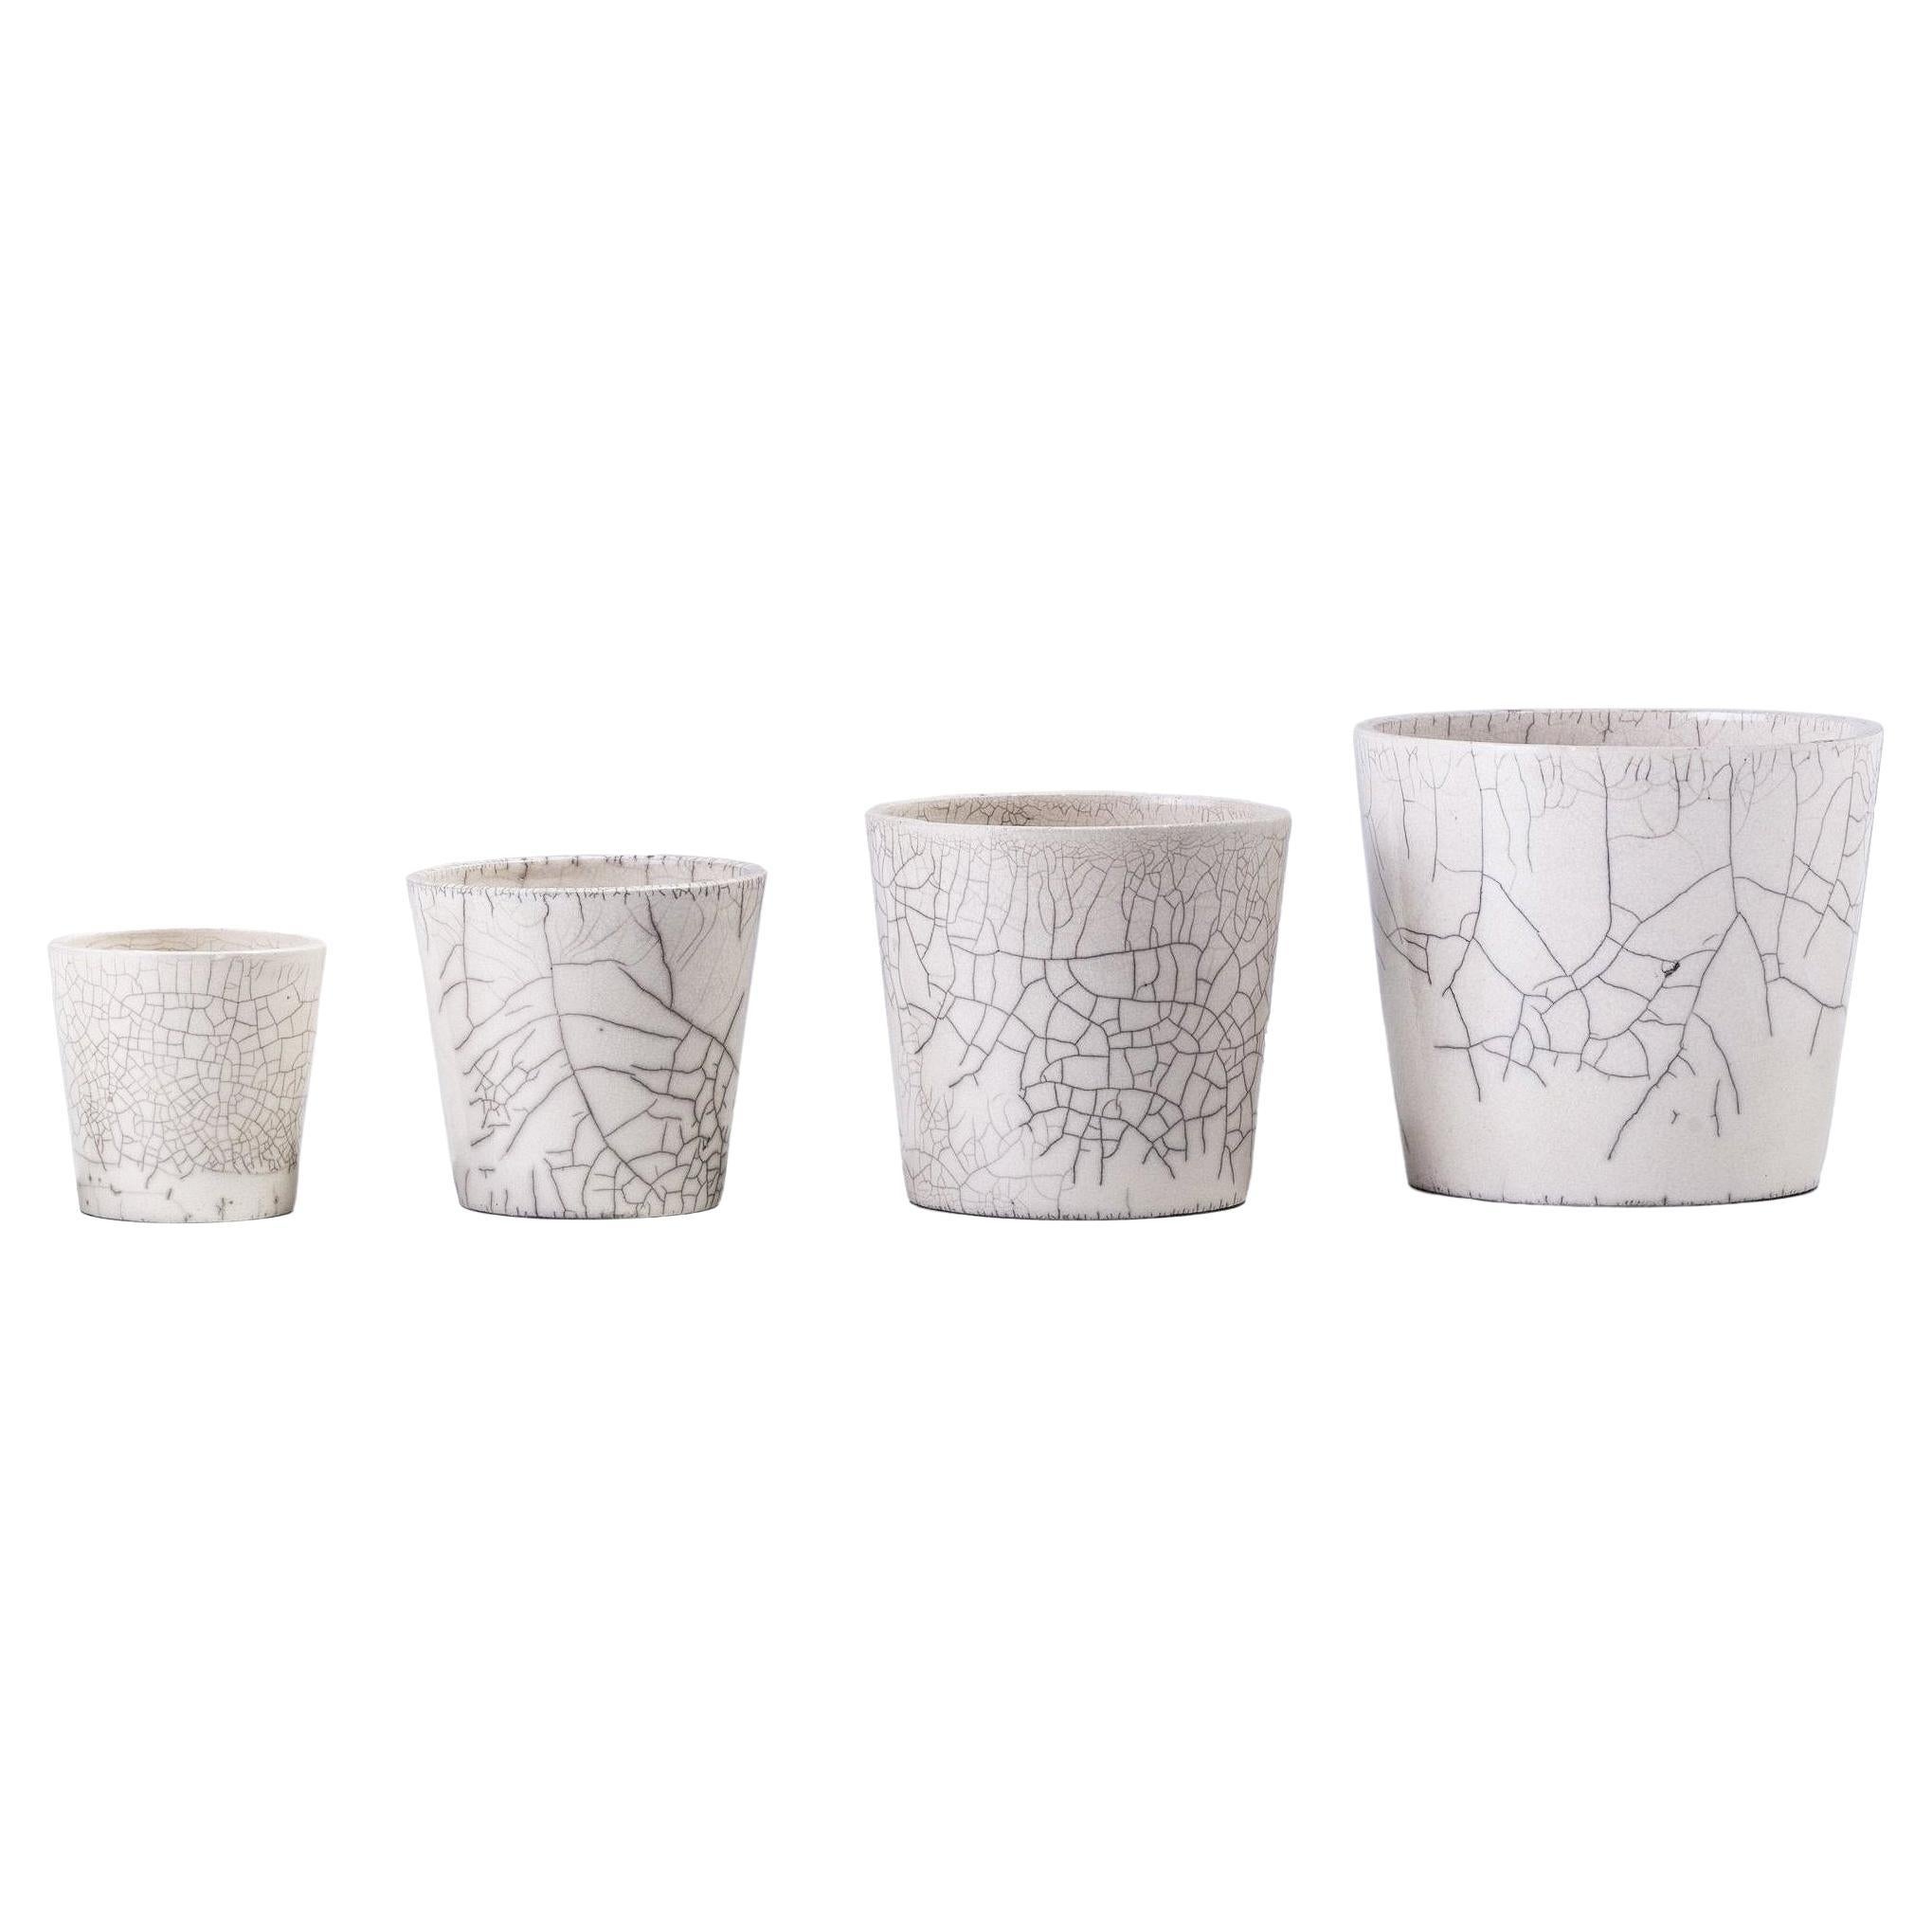 Japanese Minimalistic Laab Mangkuk Set of 4 Bowl Raku Ceramics Crackle White